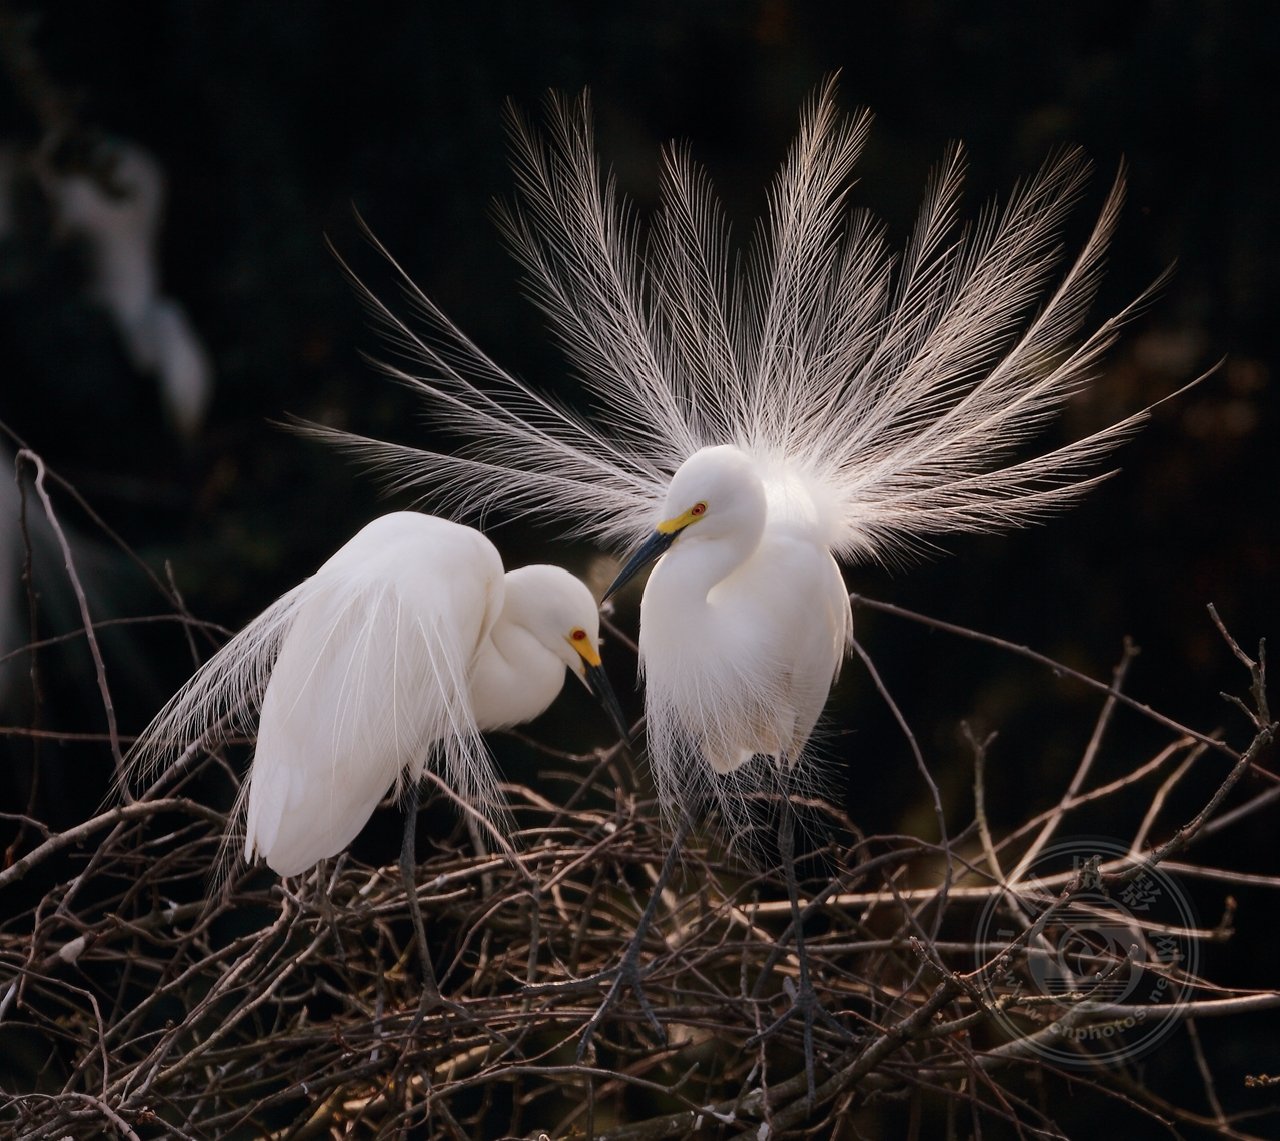 中国摄影网签约摄影师龙东文《鹭鸟的生活》 第 3 张